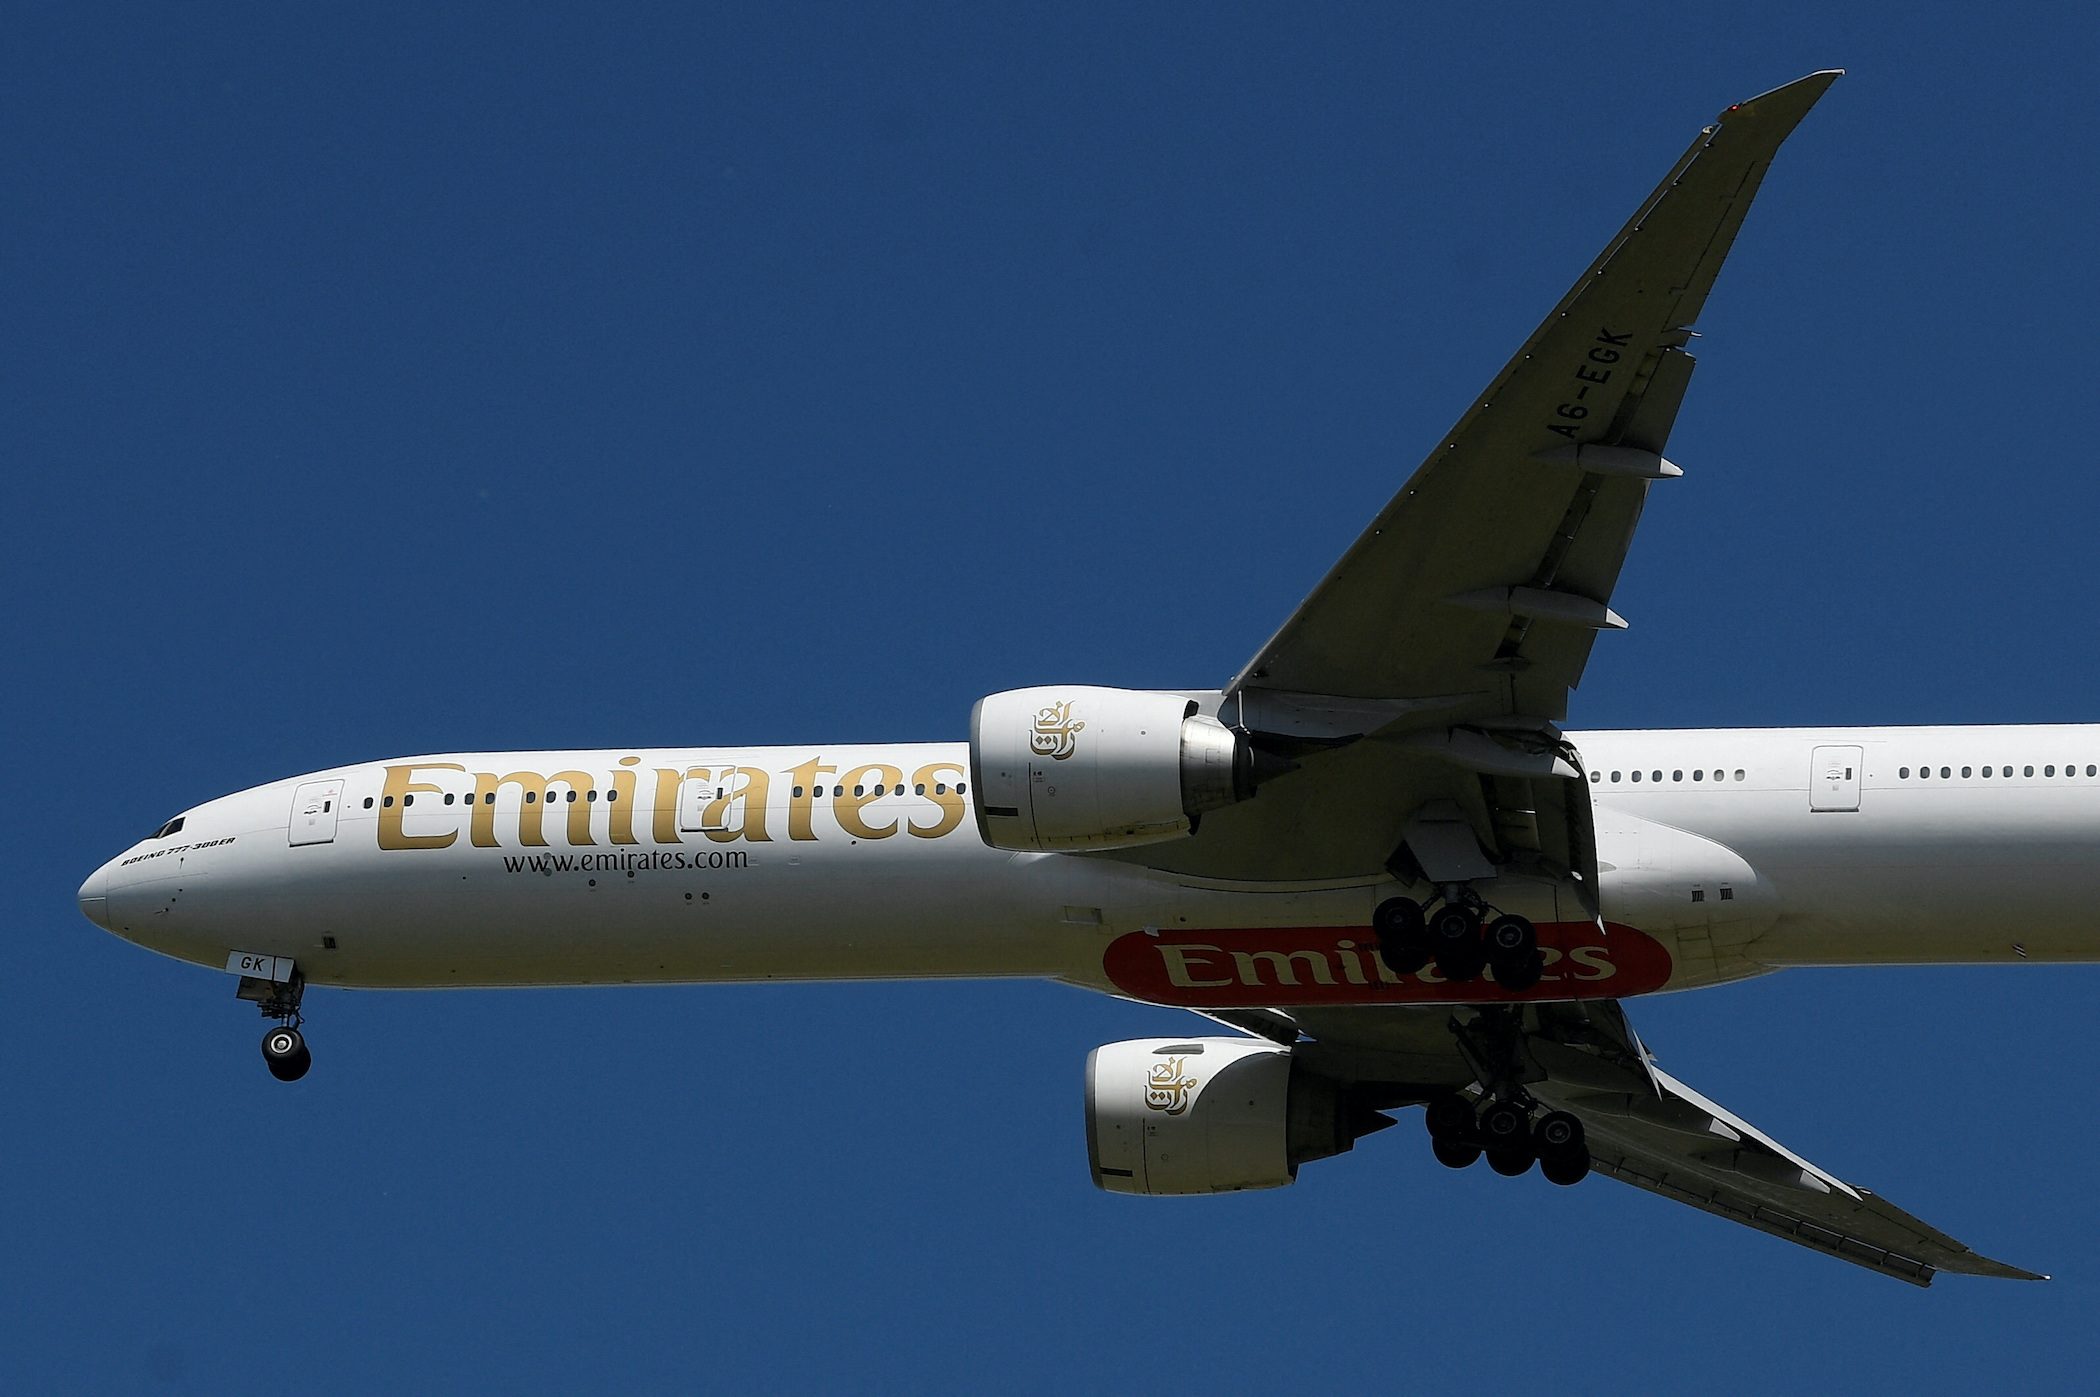 Emirates airline sees air travel equilibrium in 2023